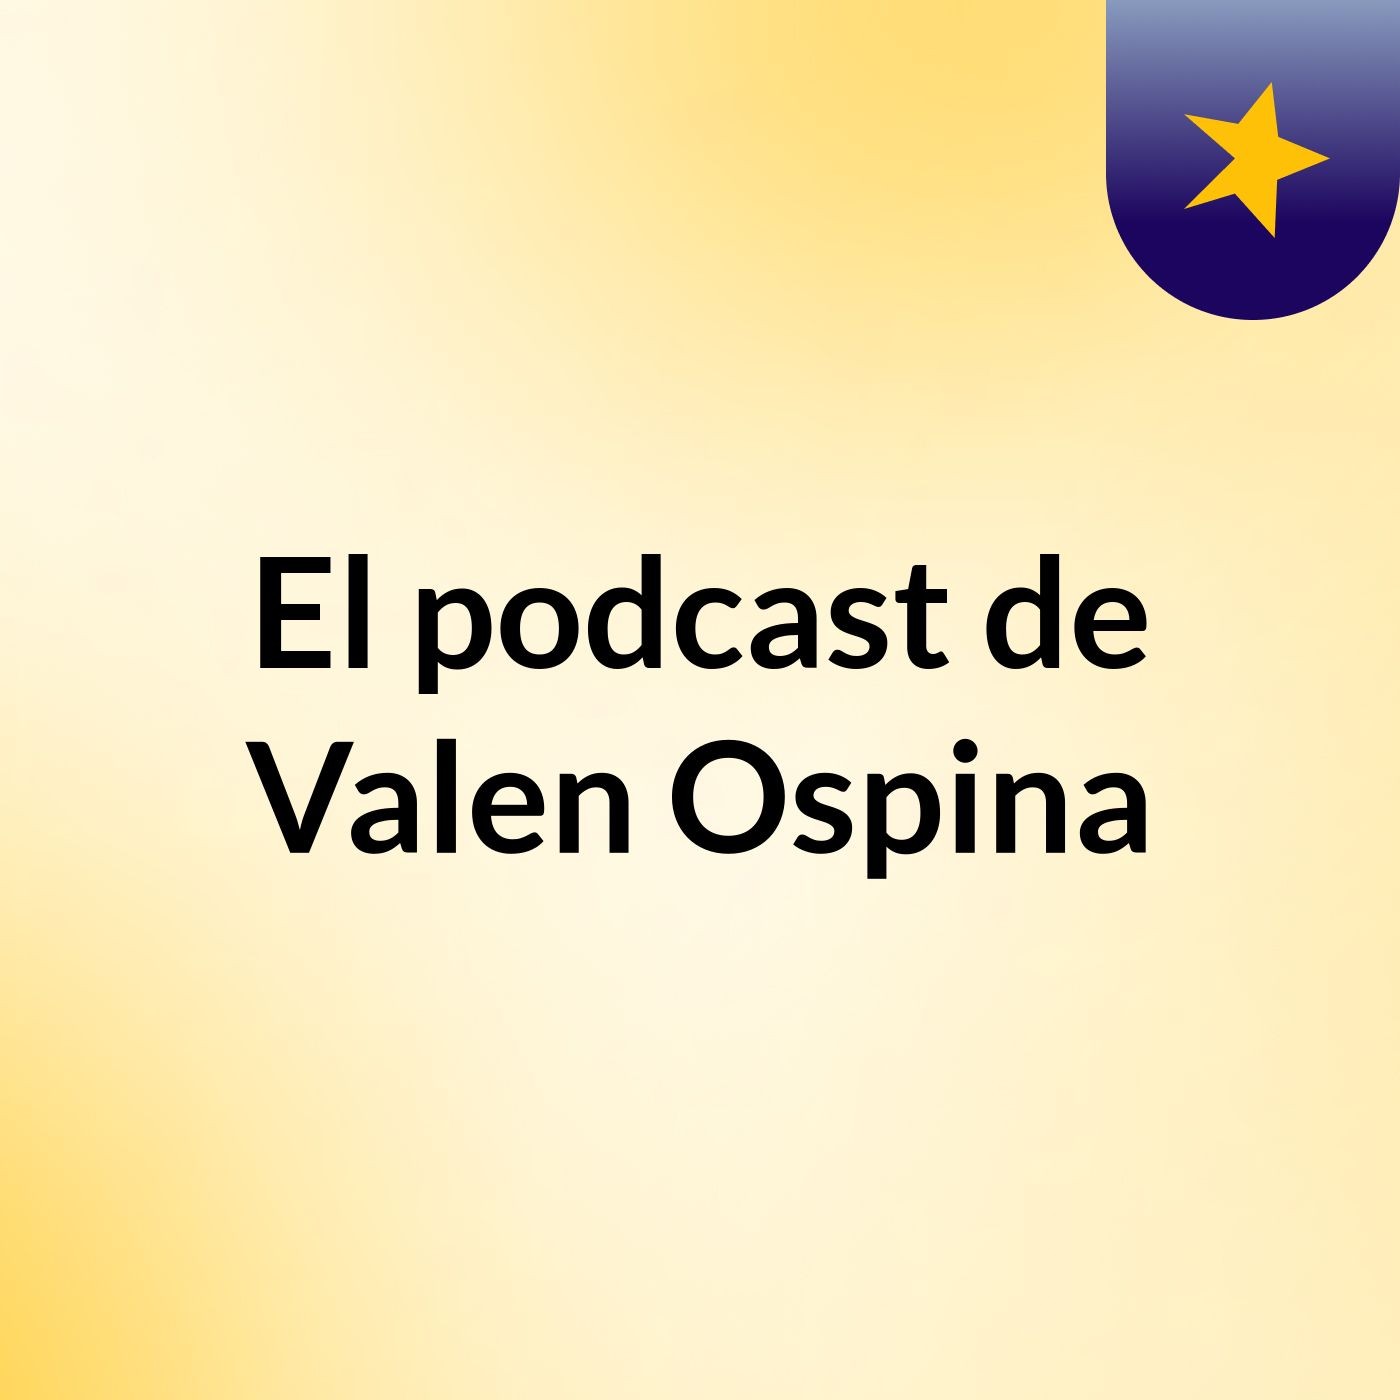 El podcast de Valen Ospina